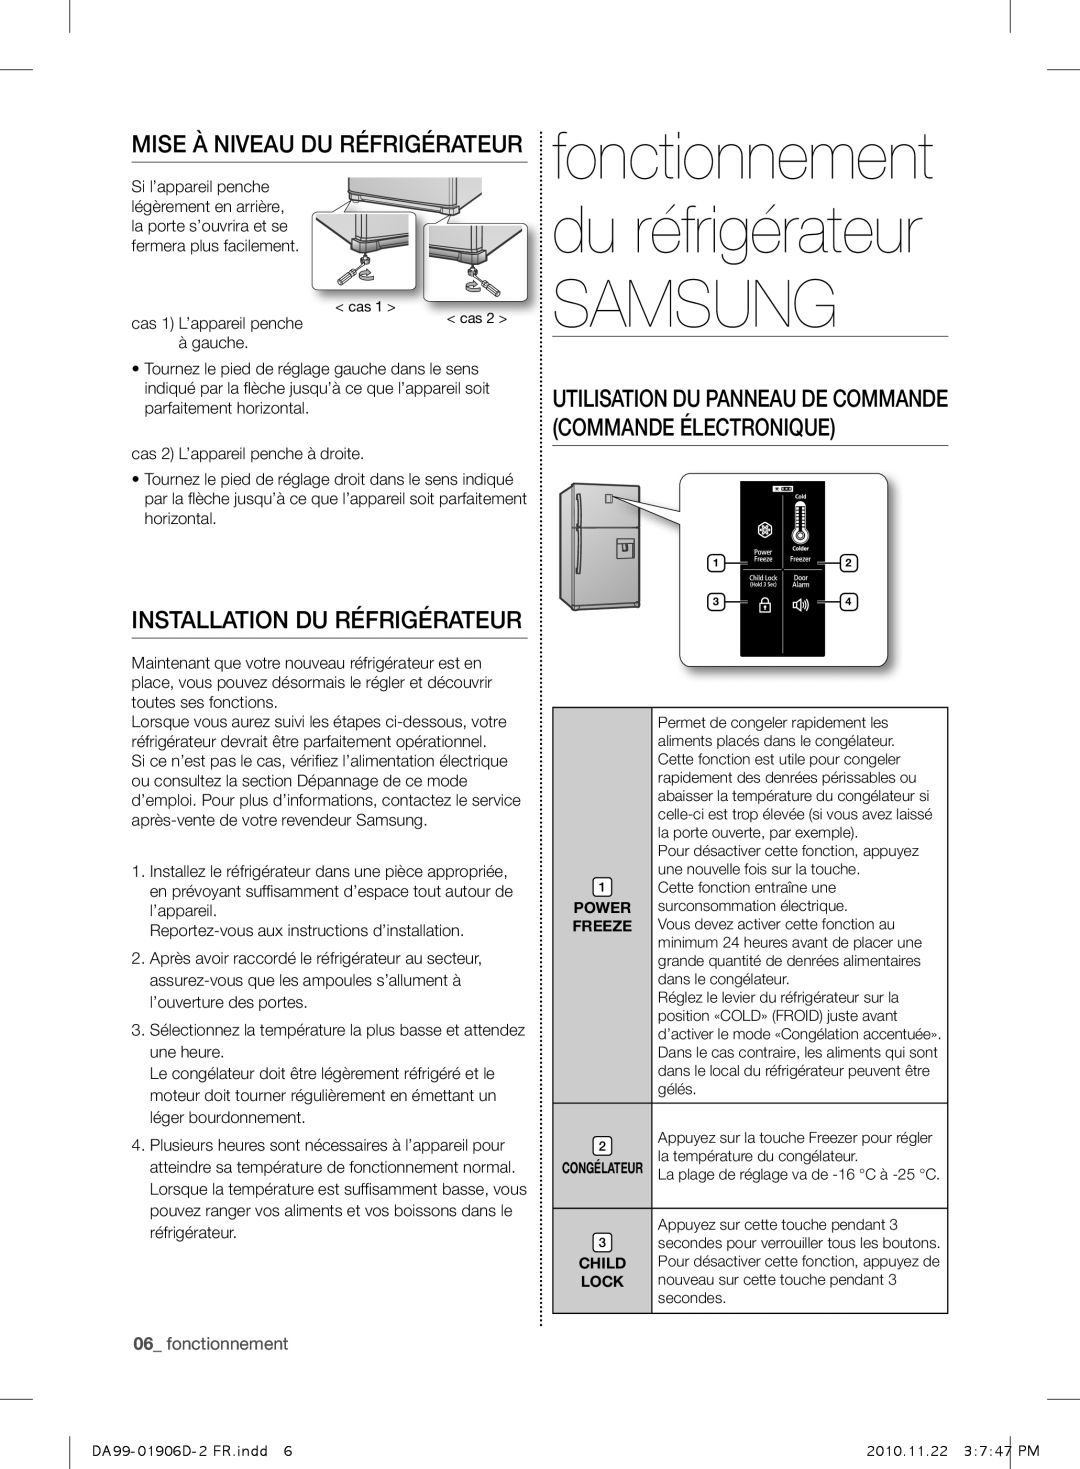 Samsung RT50QBVB1/XES manual Samsung, MISE à NIVEAU DU RÉFRIGÉRATEUR, Installation Du Réfrigérateur, fonctionnement 